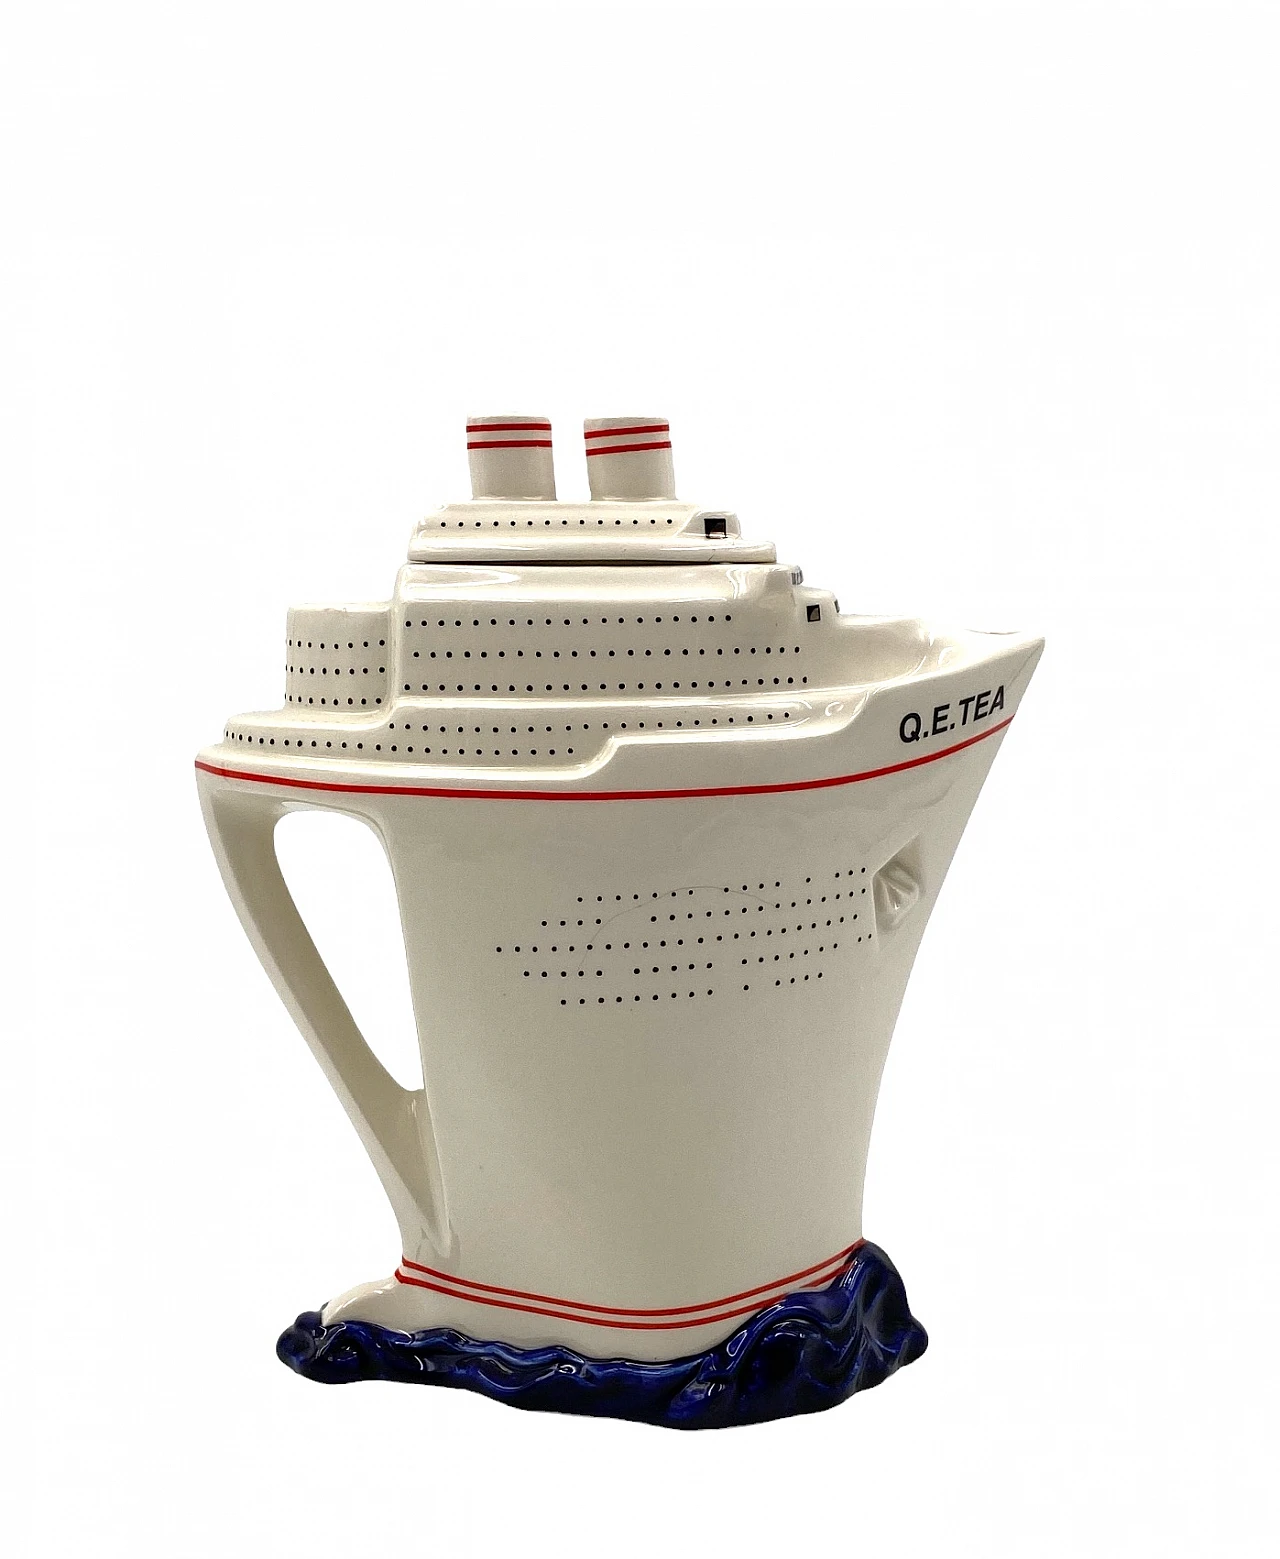 Queen Elizabeth II cruise ship teapot by Paul Cardew 16